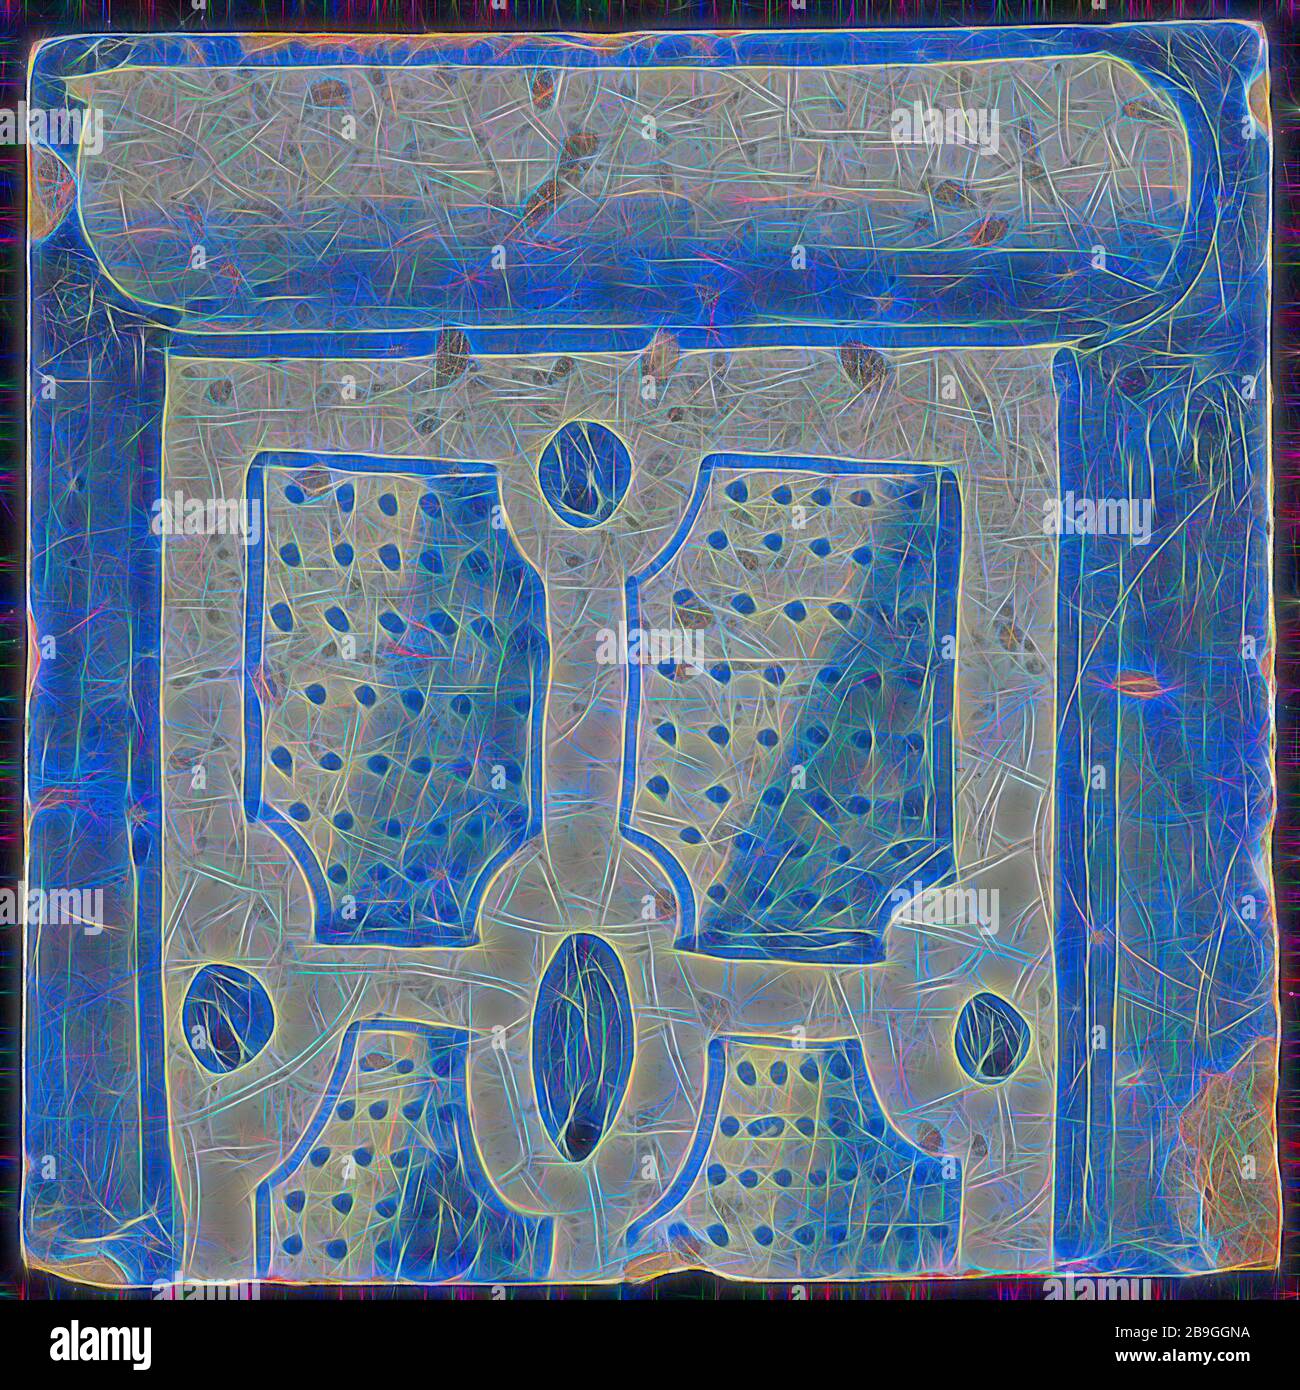 Azulejos de chimenea de la pilastra, azul sobre blanco, parte inferior de la columna con el sótano, compartimento con puntos de la pilastra de la chimenea, azulejos de cerámica de la pilastra metraje fragmento vidriado de barro cocido, pintado azulejo vidriado 2x parte de la chimenea de la pilastra originalmente doce o trece shard cuadrado amarillo de alta dos agujeros de clavos. Azul sobre blanco fond. Mosaico es parte de una sola fila de la pilastra en estilo renacentista y muestra la parte inferior de la columna con la división con puntos azules sombra sobre el derecho en el centro de la plaza: G 1914 construcción ayuntamiento Zandstraat cuartas partes segunda guerra mundial el bombardeo del centro de la ciudad de Rotterdam Stadsdriehoek 1940 volver Foto de stock